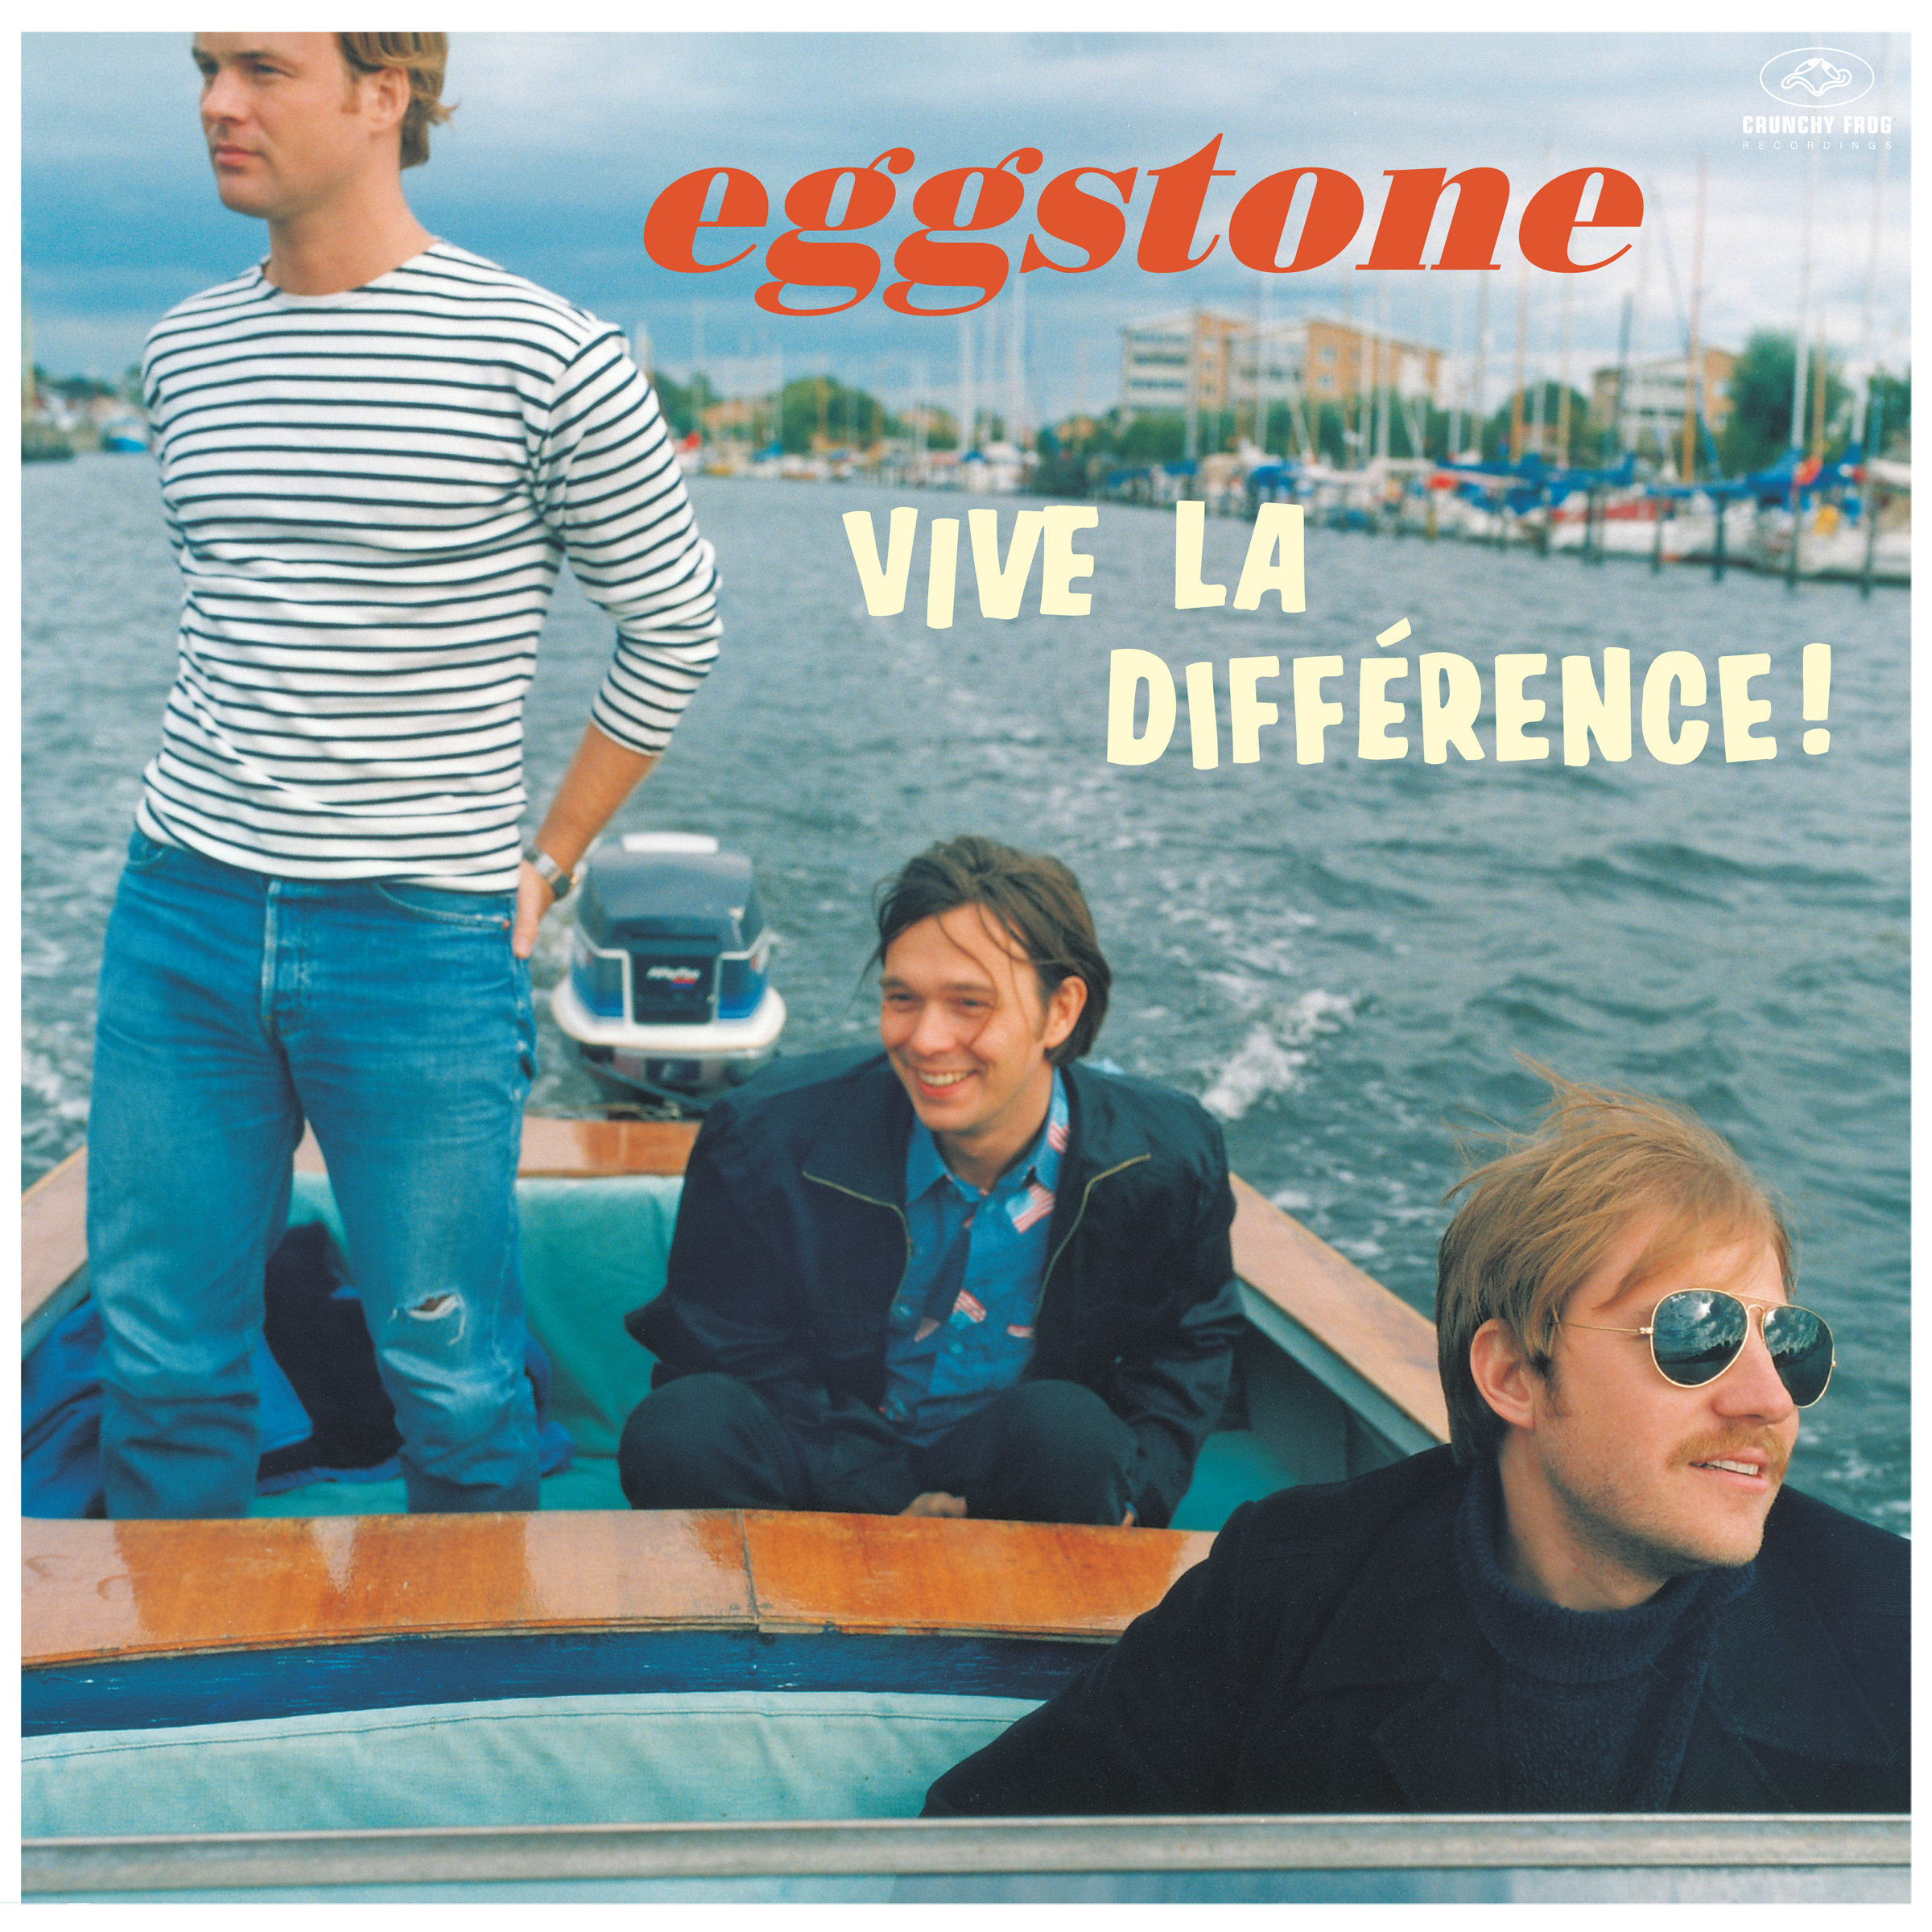 Eggstone - Vive La Diff rence!